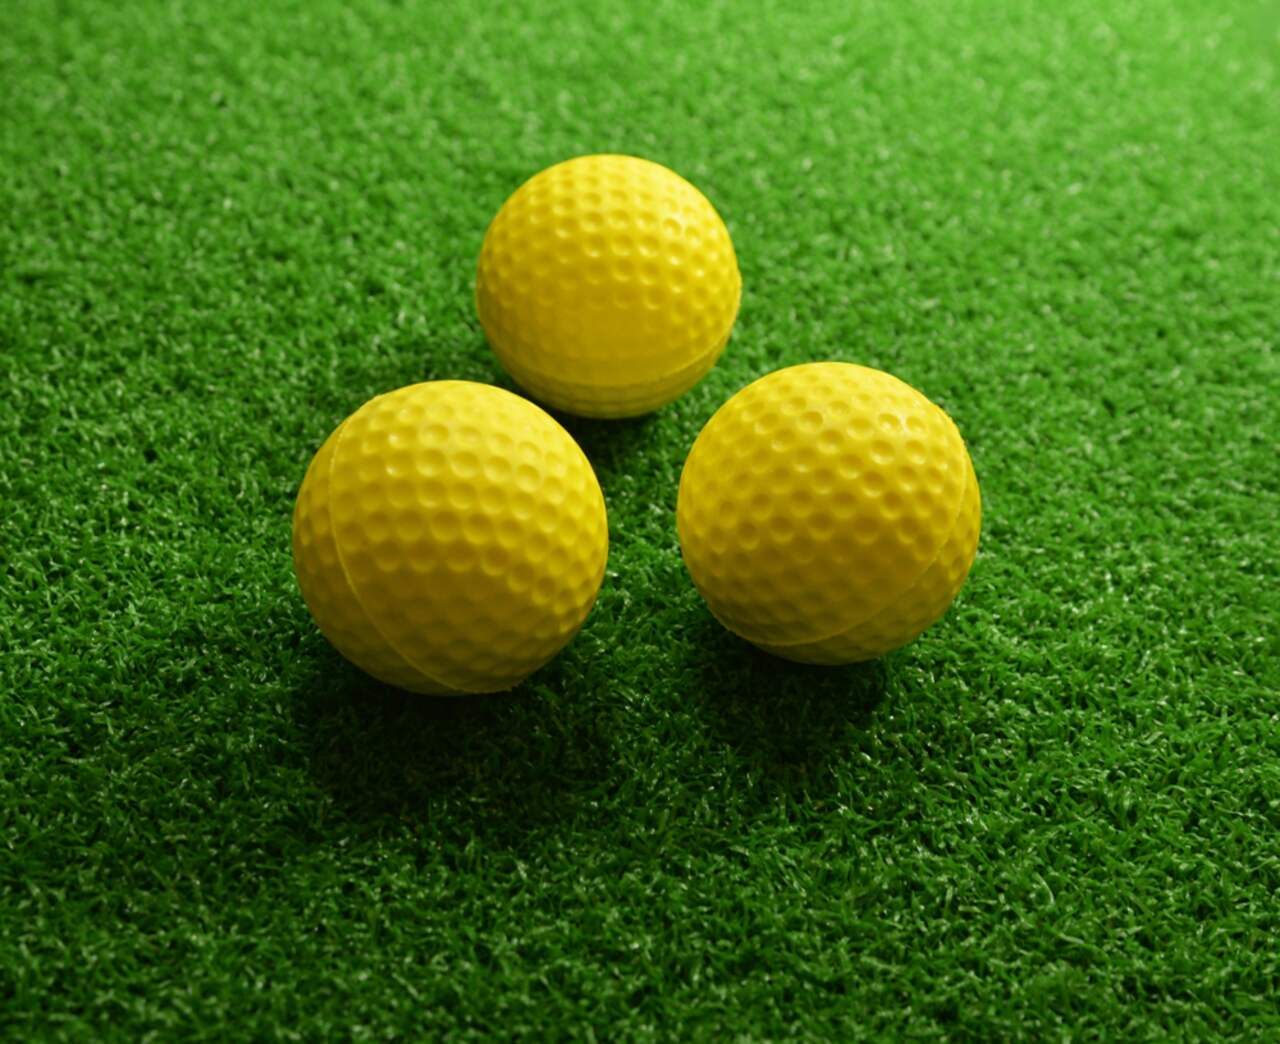 Balle de golf en mousse jaune Entraînement Balles en mousse souple Balle  d'entraînement